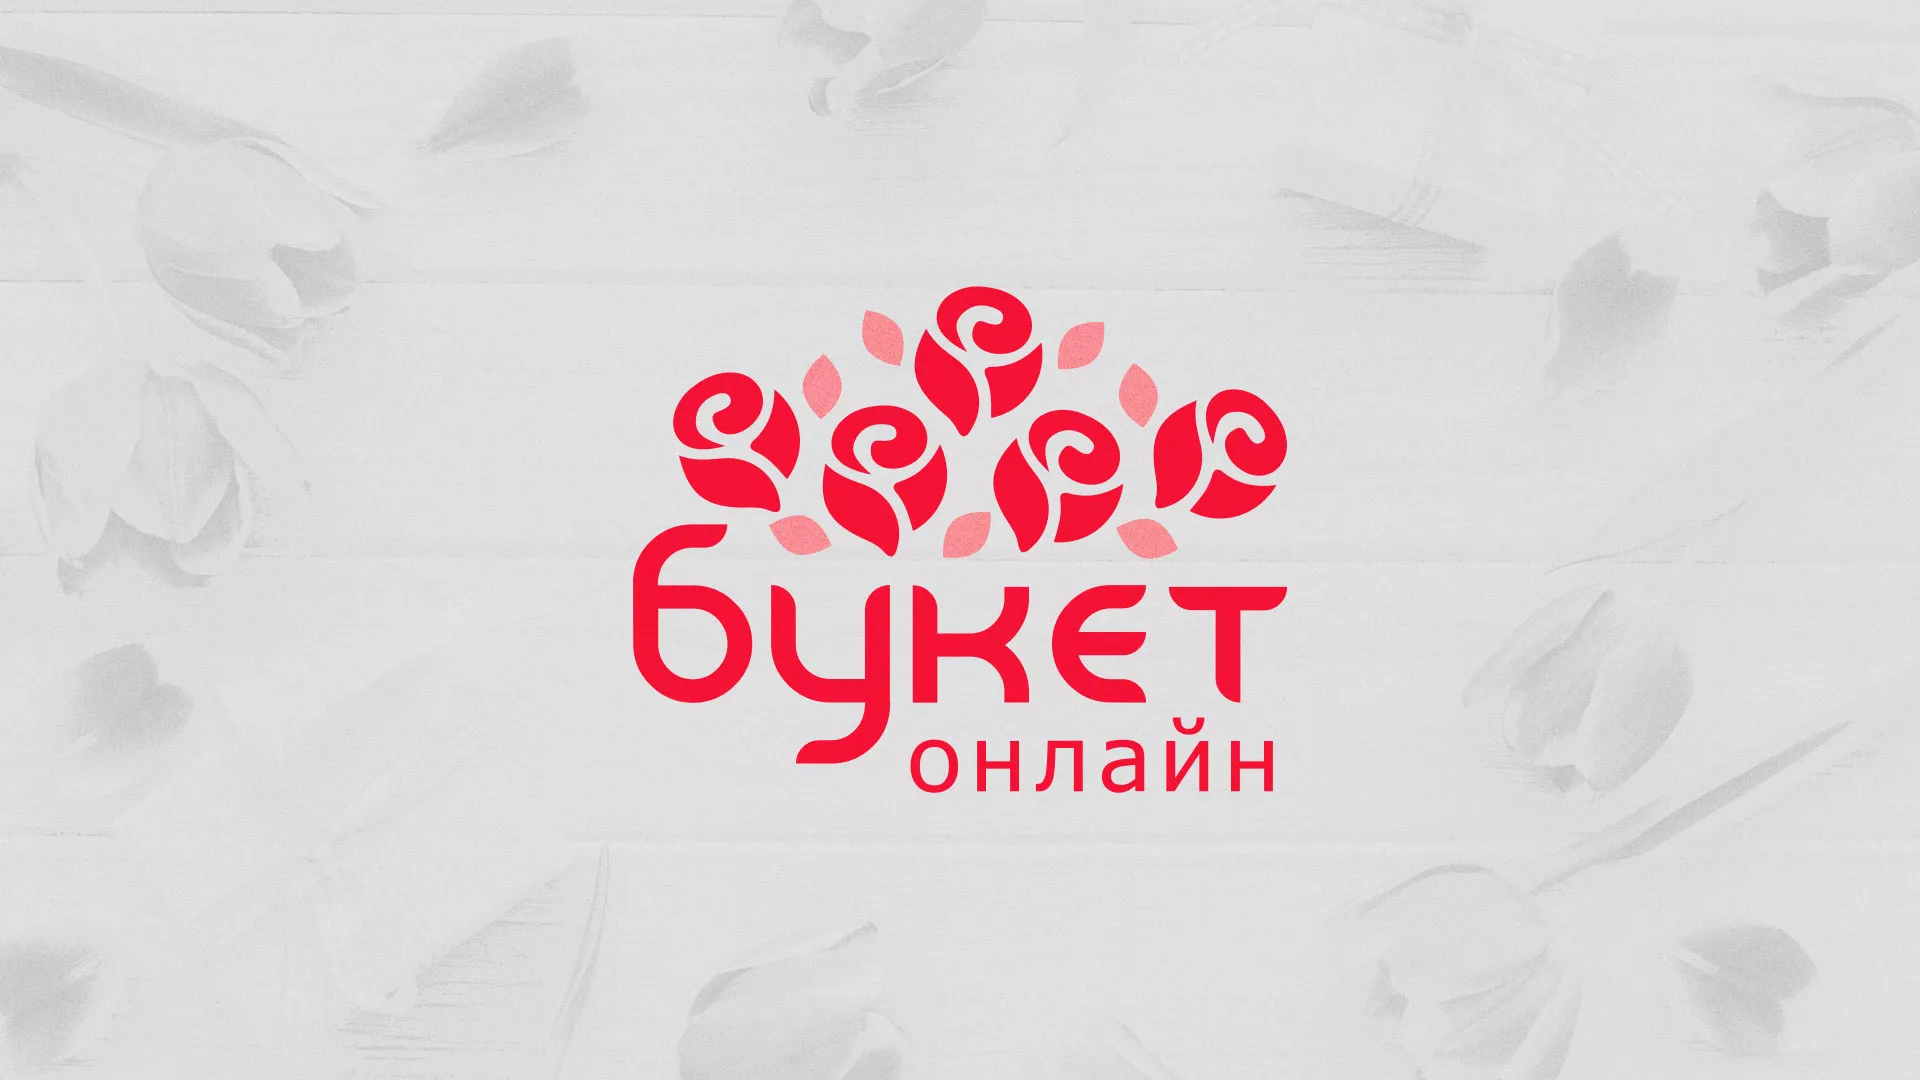 Создание интернет-магазина «Букет-онлайн» по цветам в Горбатове